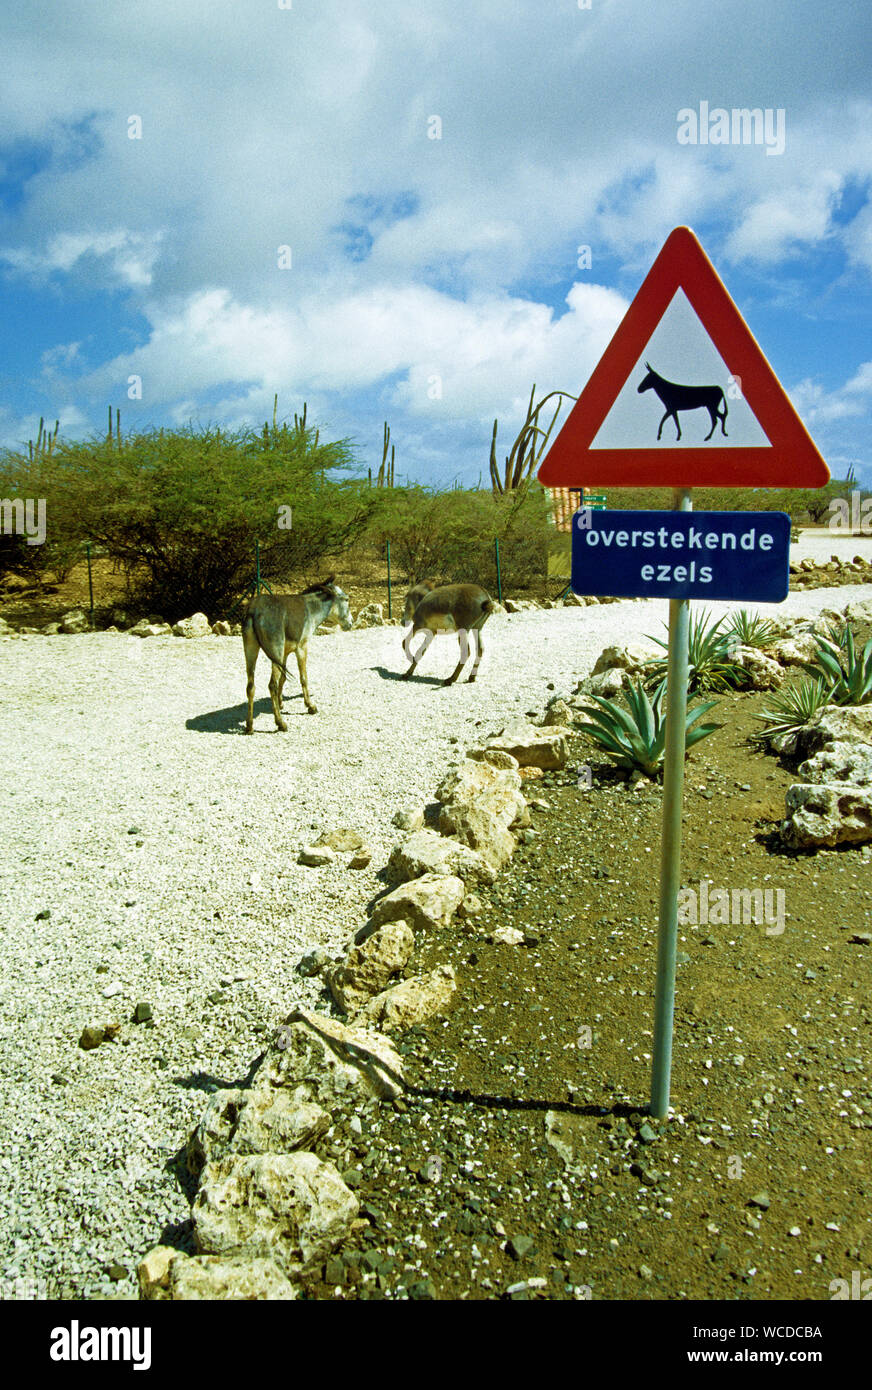 Strada segno, asini selvatici sulla strada, Bonaire, Antille olandesi Foto Stock